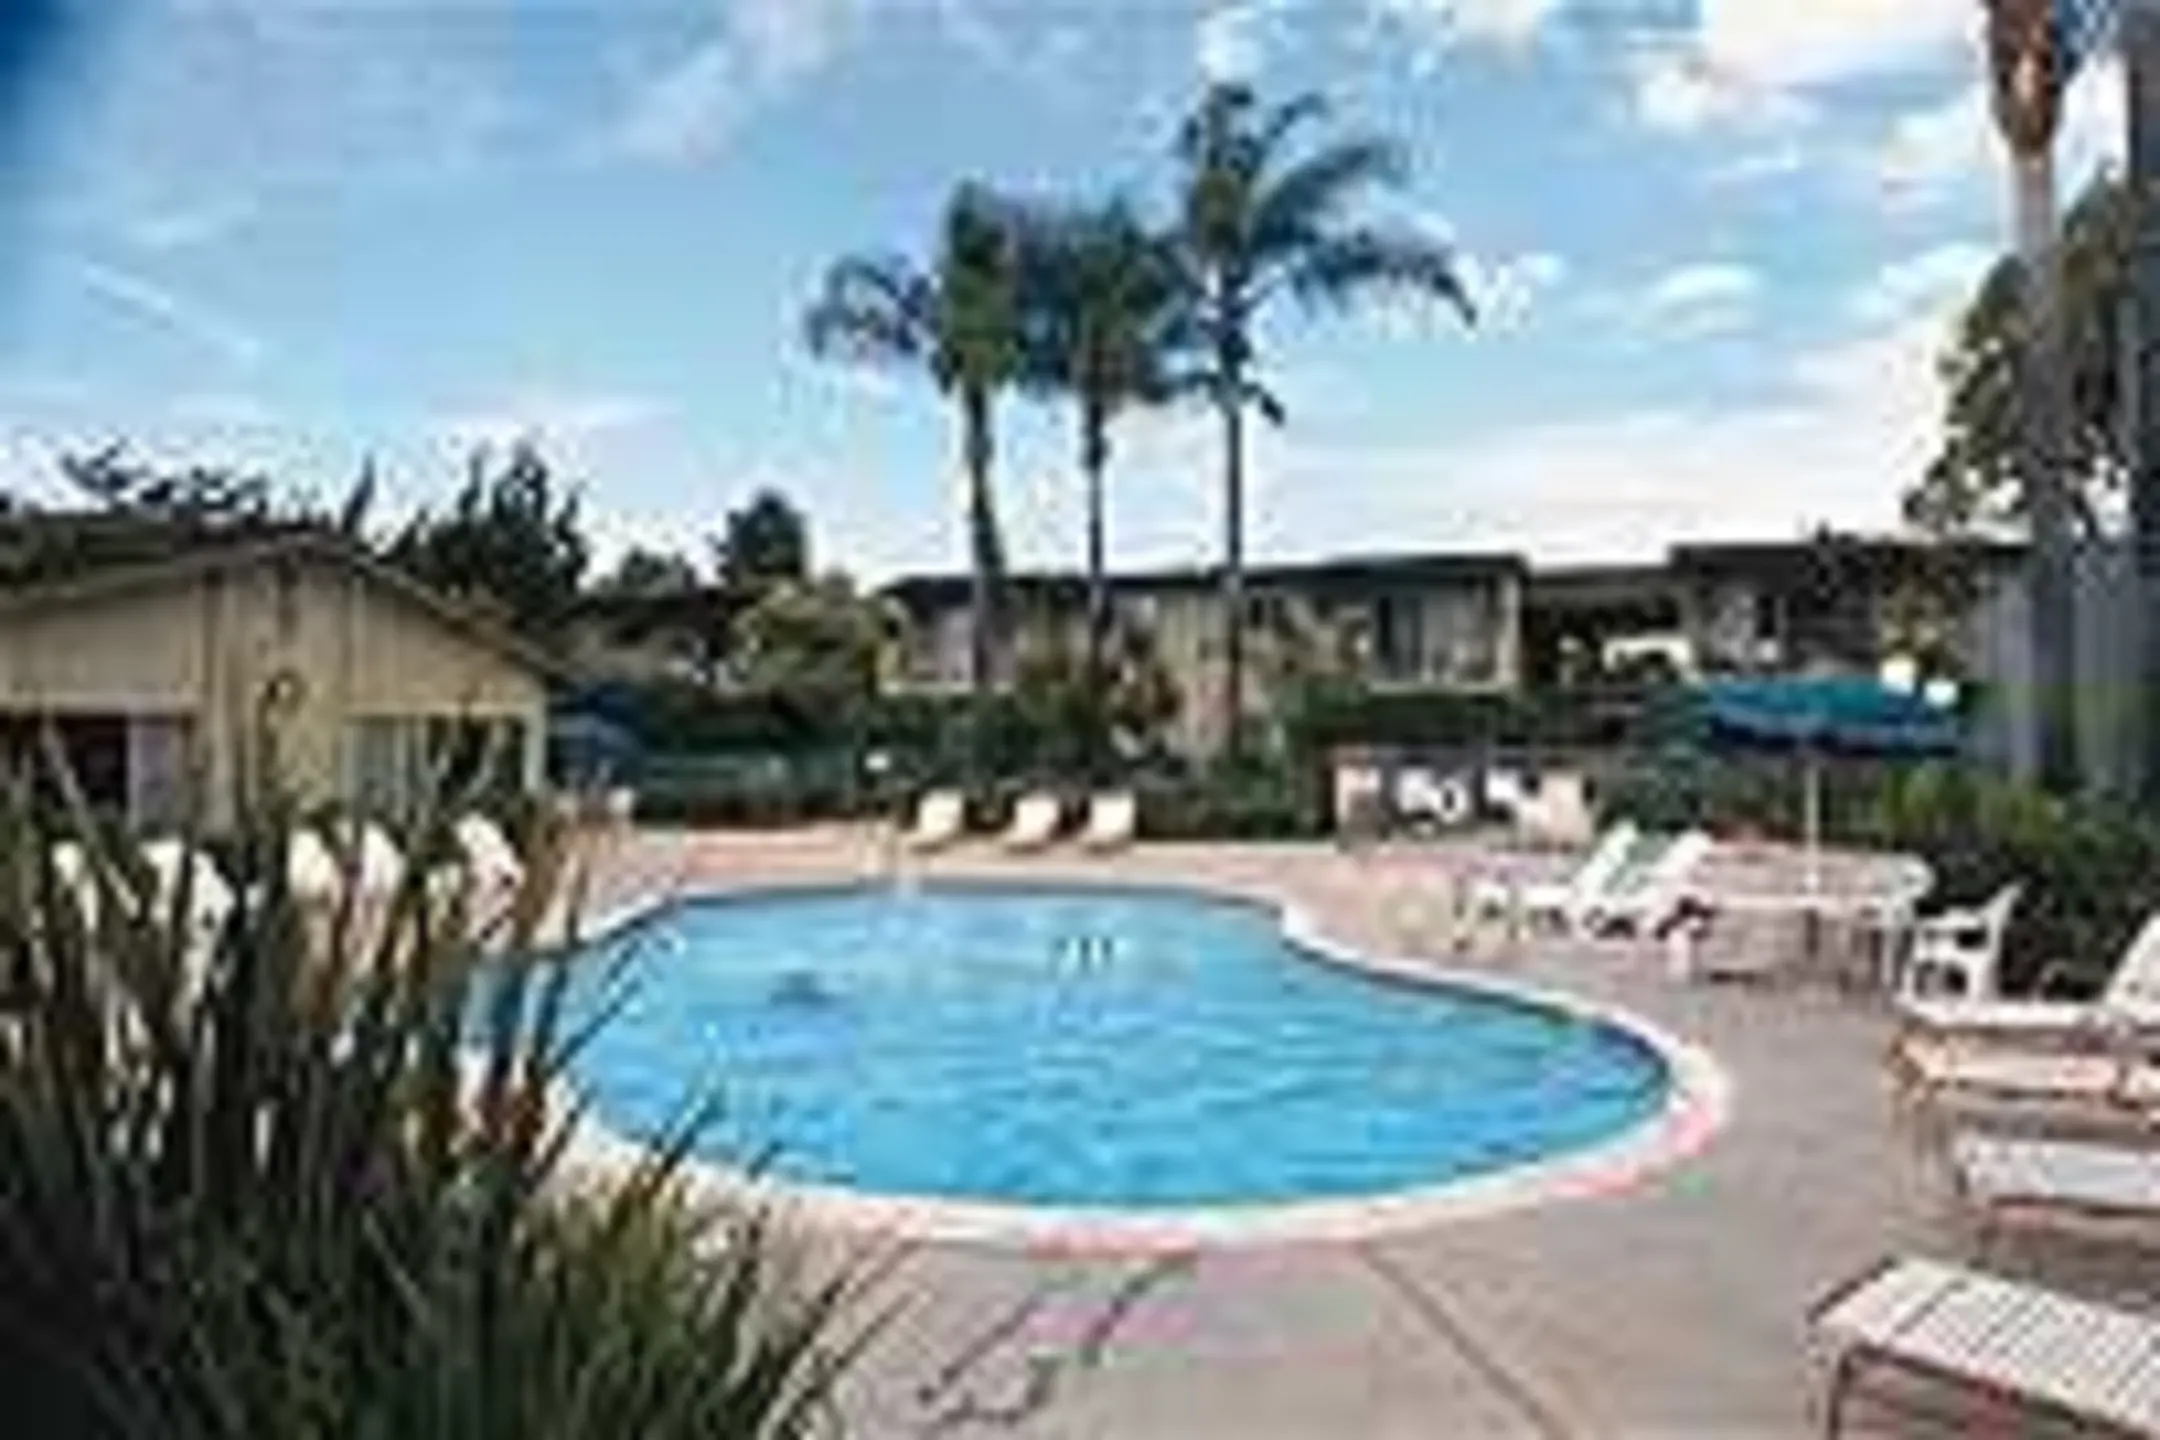 Pool - 1575 Oak Apartment Homes - Vista, CA